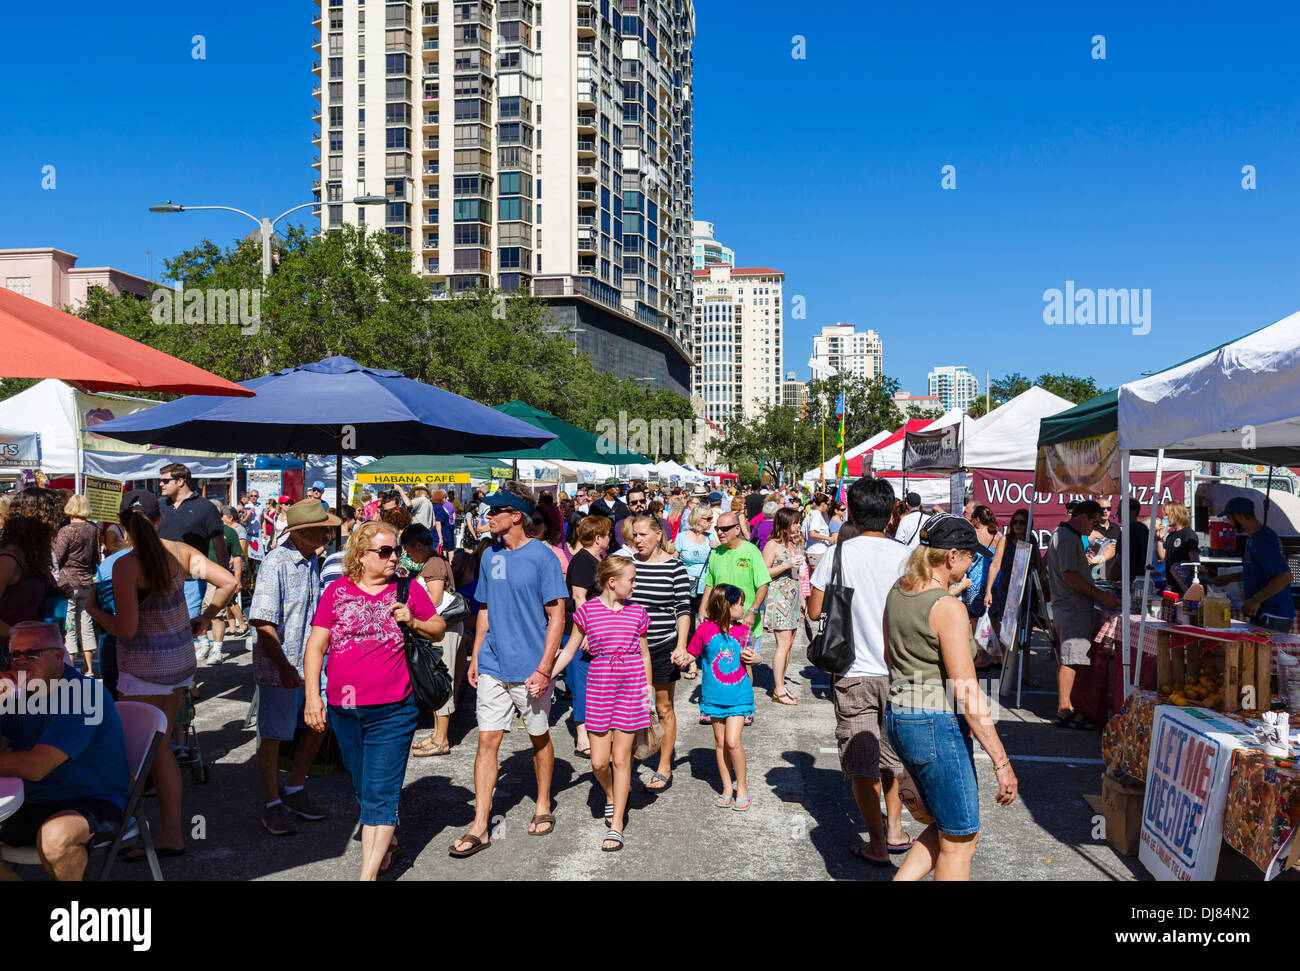 El sábado por la mañana, en el mercado de St Petersburg, Florida, EE.UU. Foto de stock